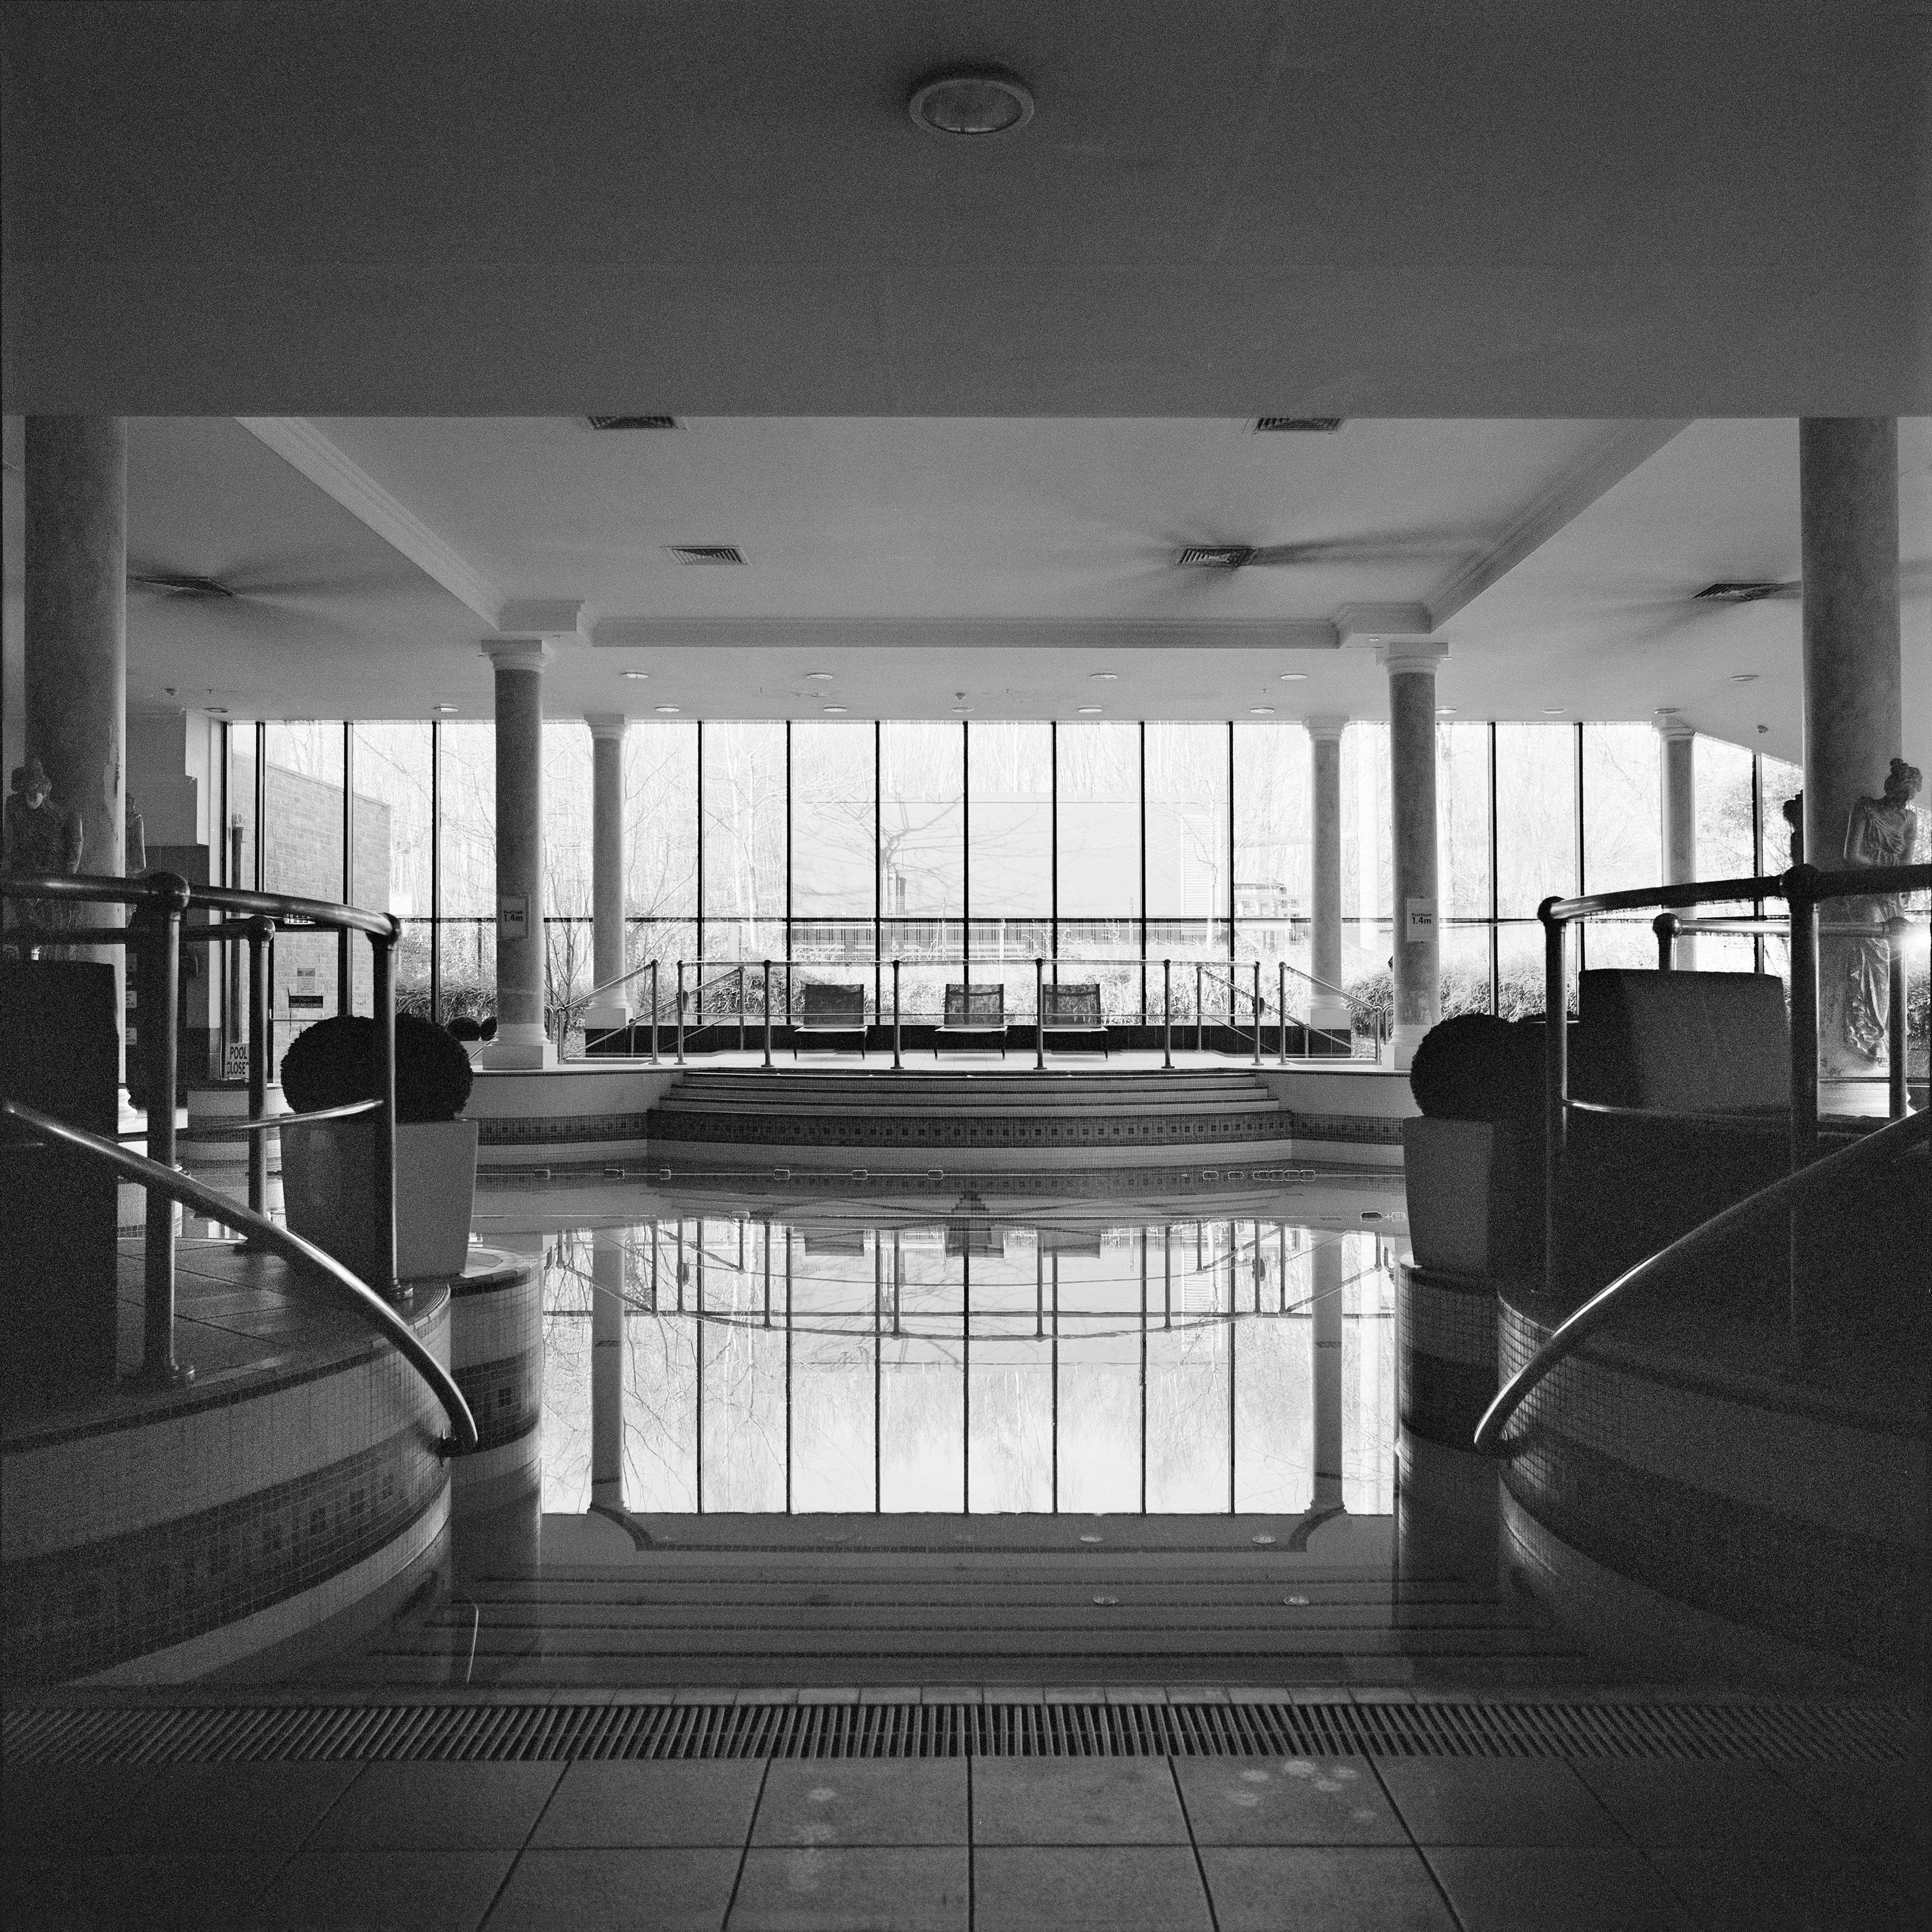 Monochrome Square Architecture Photography: Swimming Pool Design